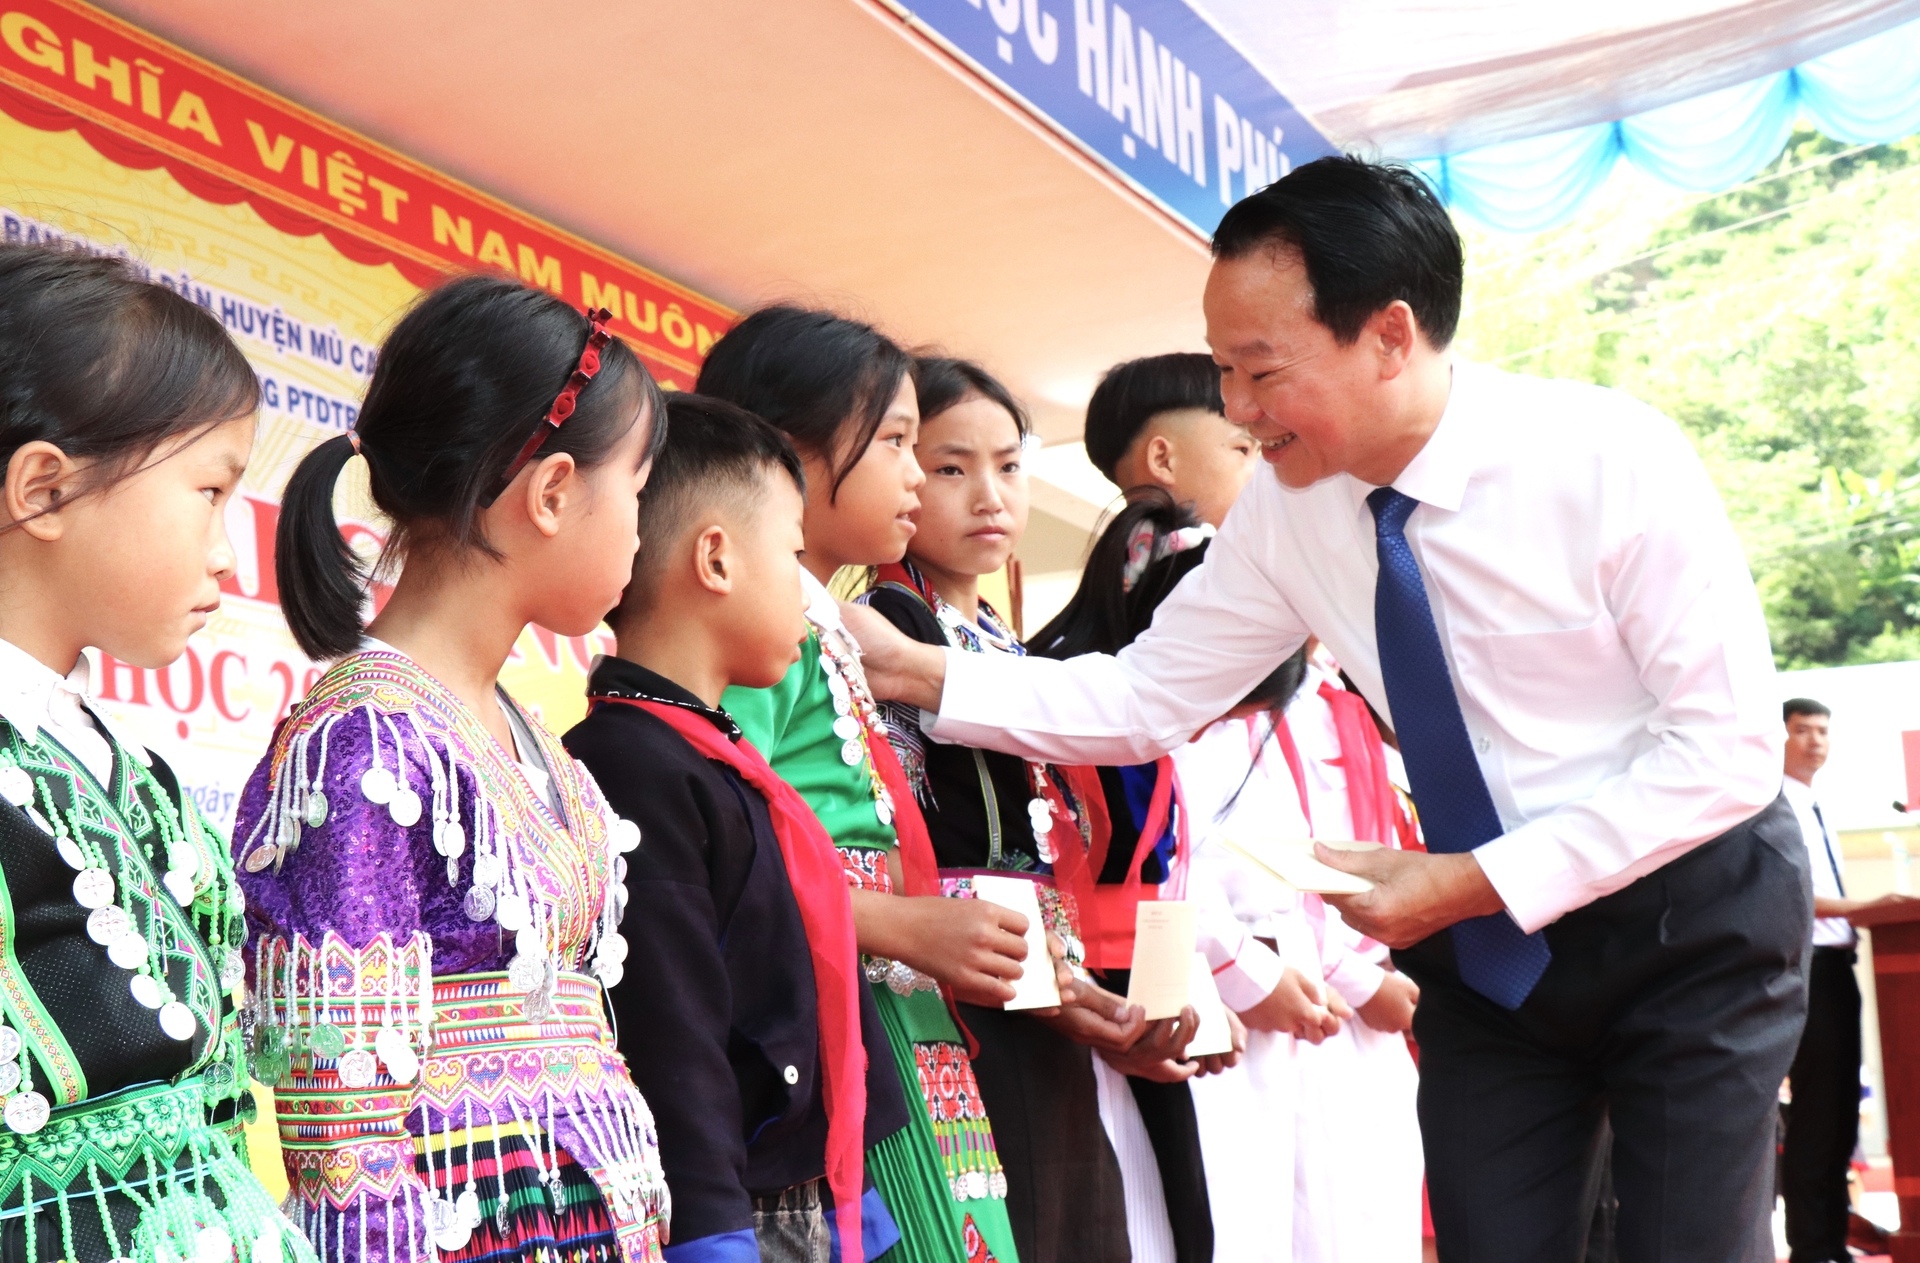 Lãnh đạo tỉnh Yên Bái trao học bổng cho các em học sinh nghèo vượt khó. Ảnh: Thanh Tiến.